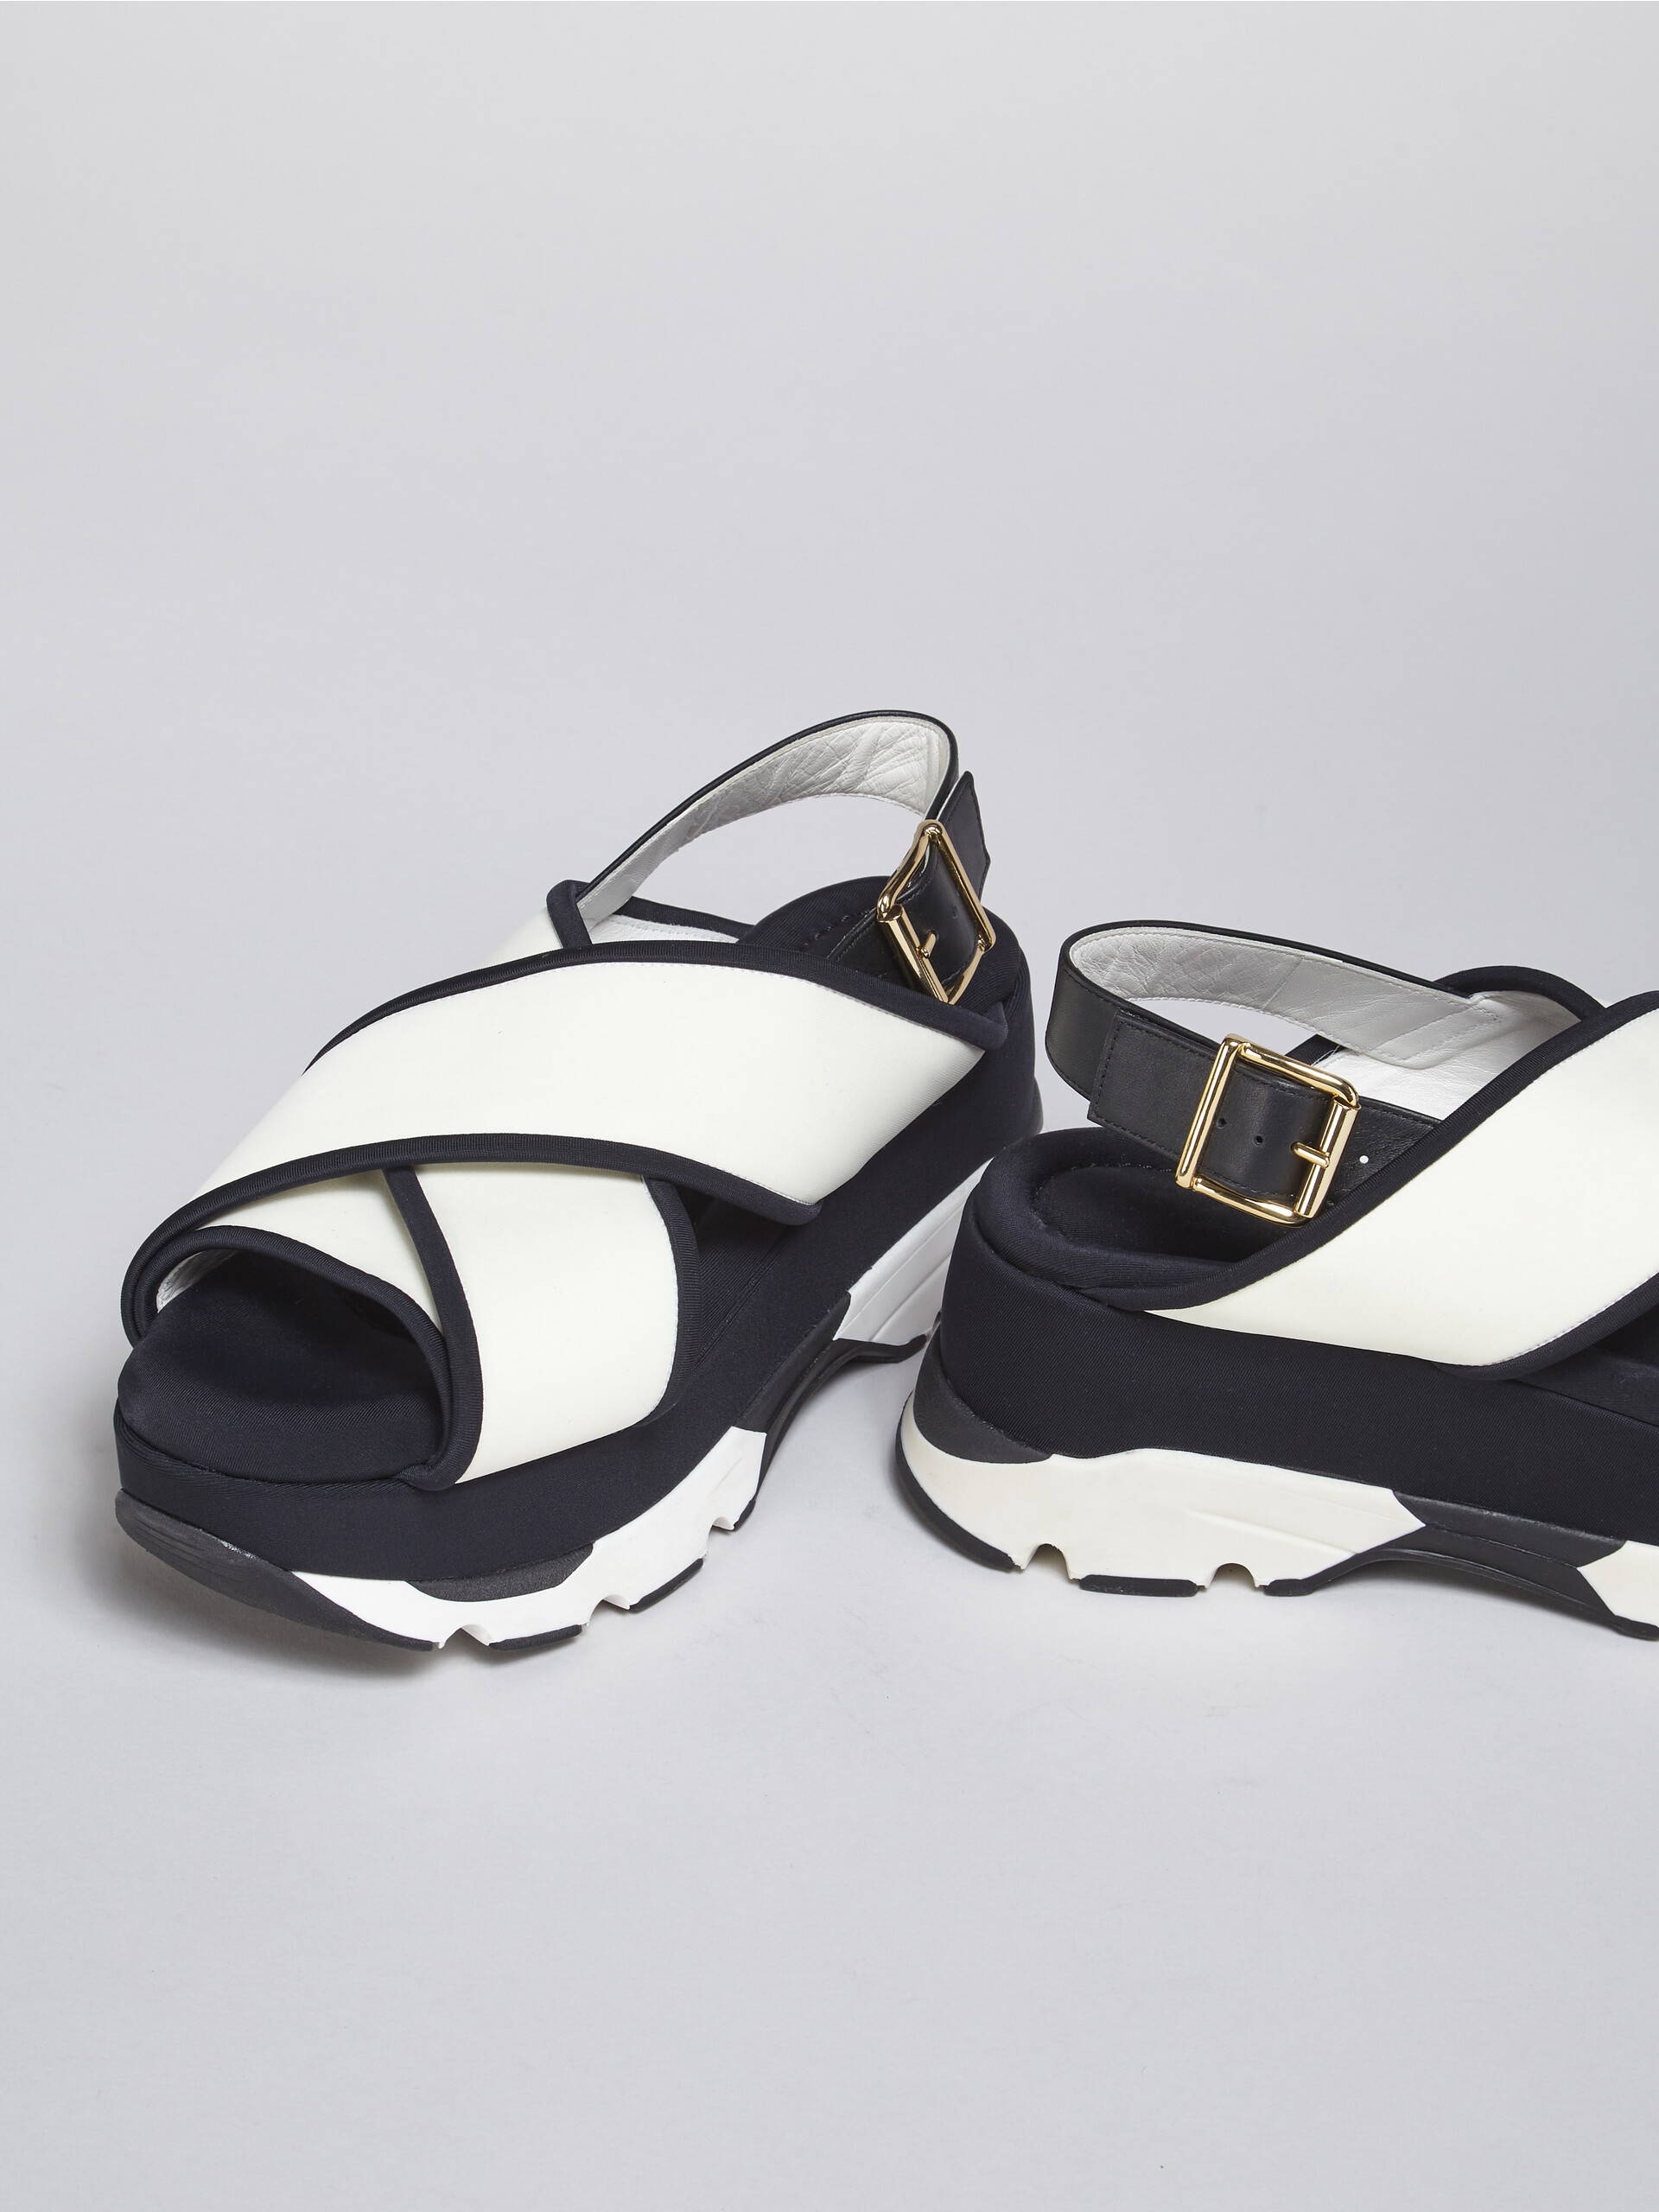 Sandale compensée à brides croisées en tissu technique blanc et noir - Sandales - Image 5